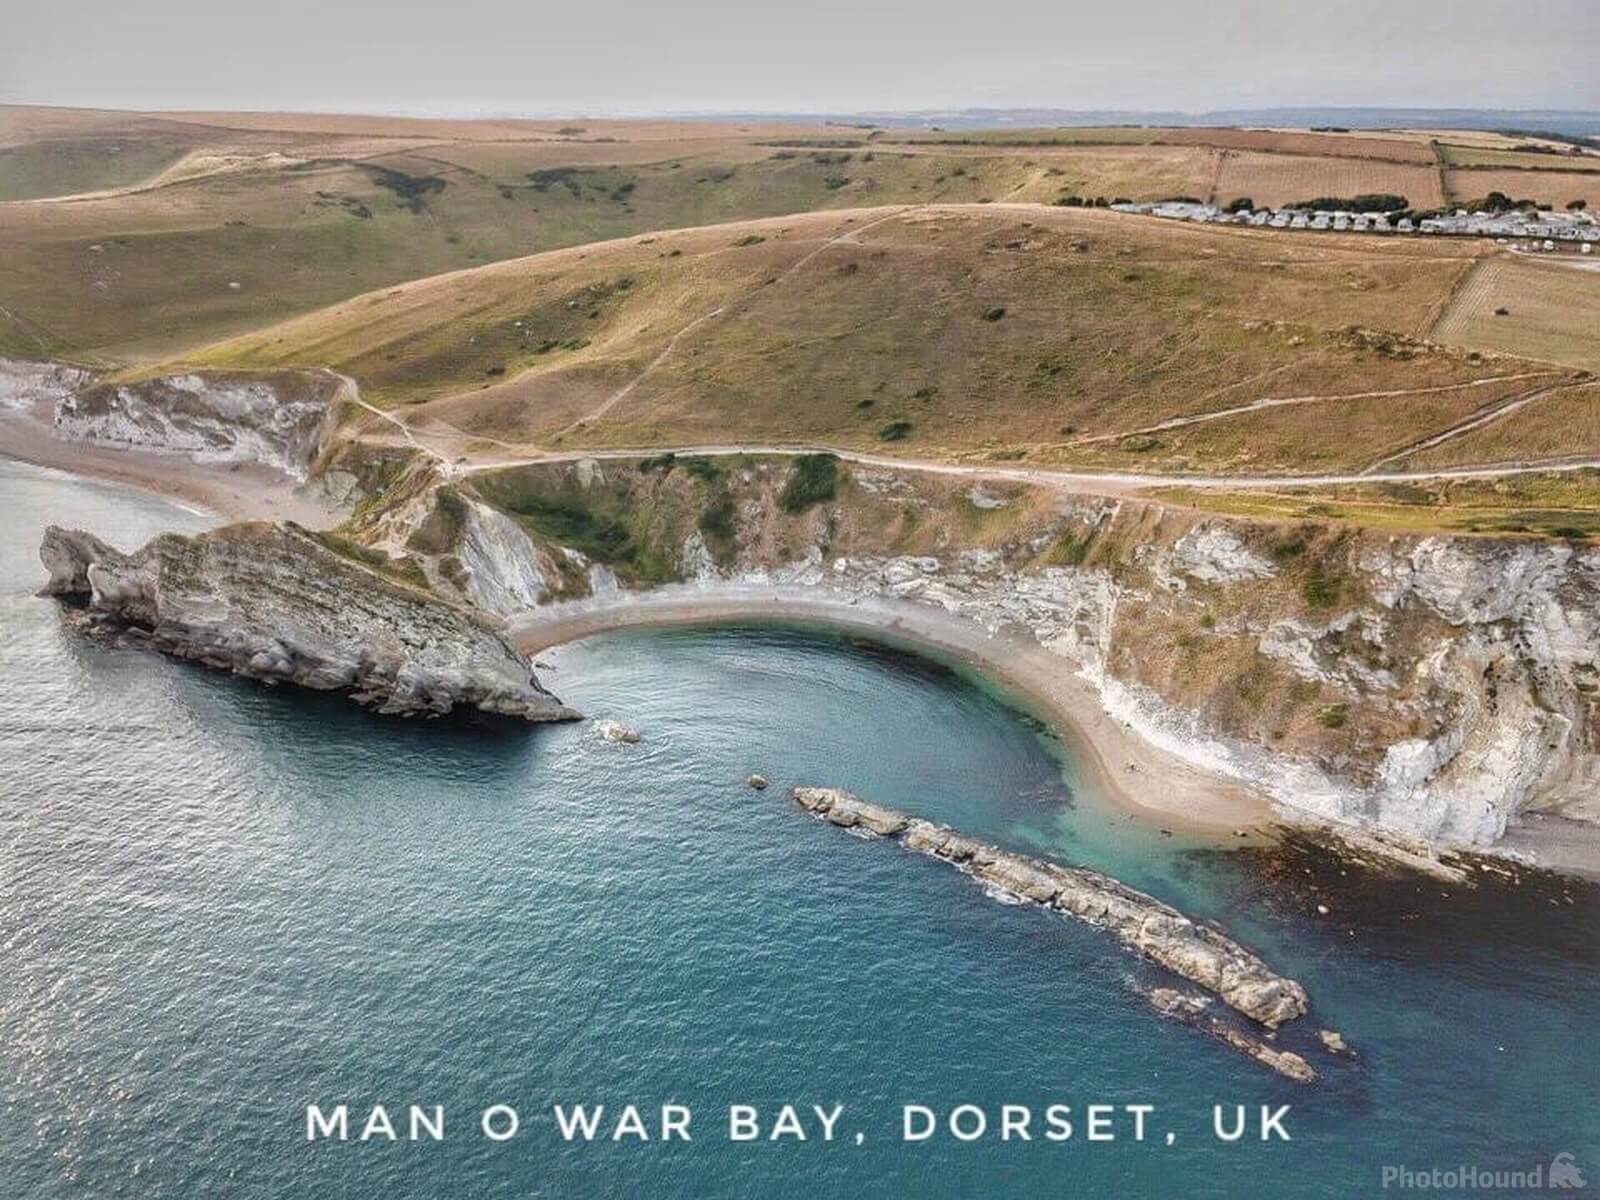 Image of Man O’ War Bay by Matt Rowley